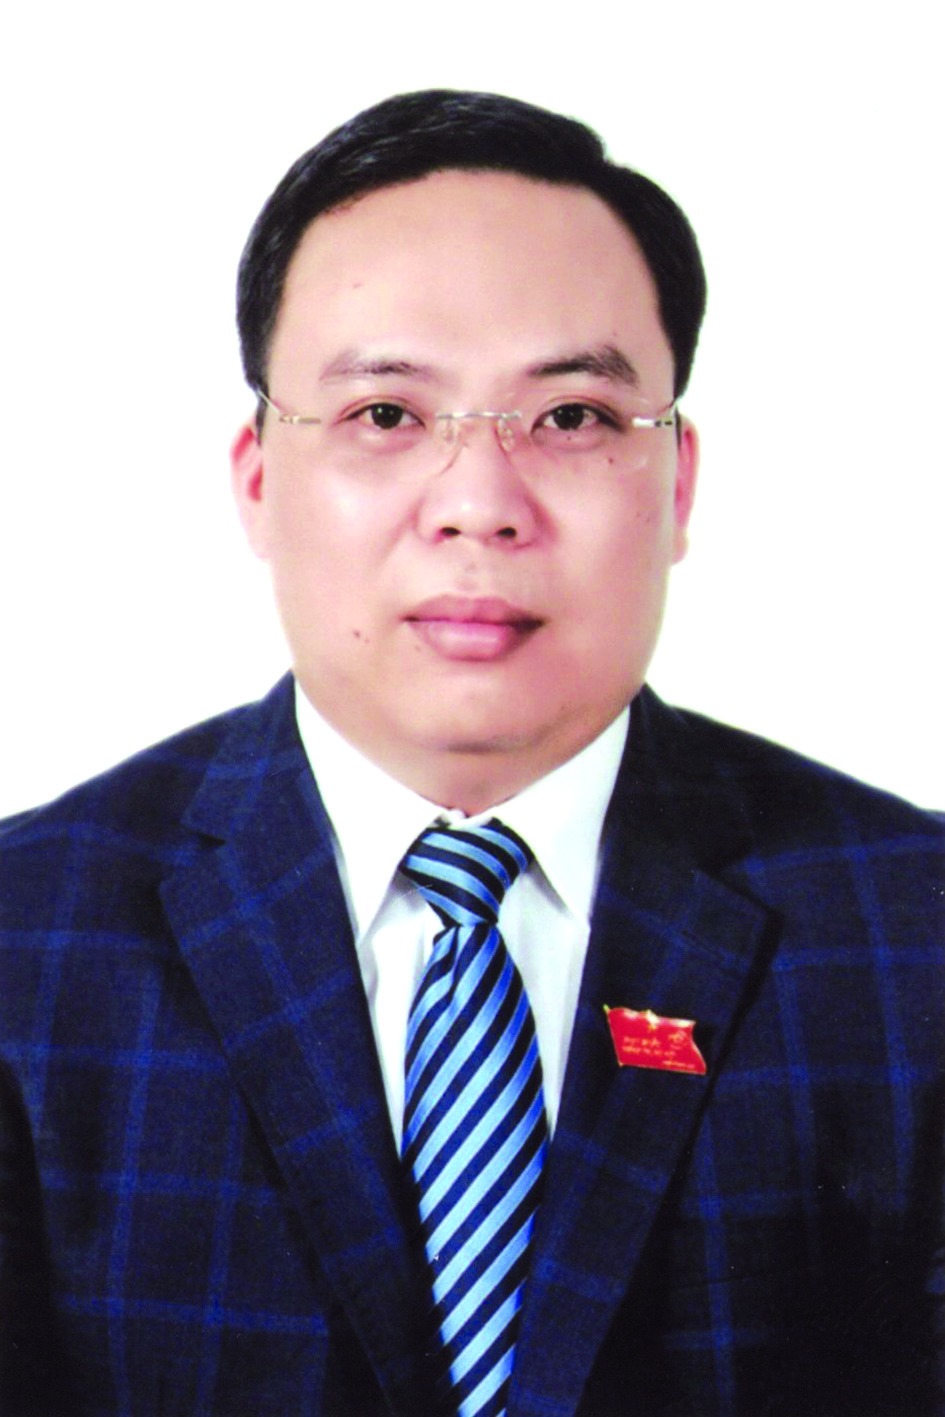 Chương trình hành động của ông Nguyễn Minh Tuân, ứng cử viên đại biểu HĐND TP Hà Nội nhiệm kỳ 2021 - 2026 - Ảnh 1